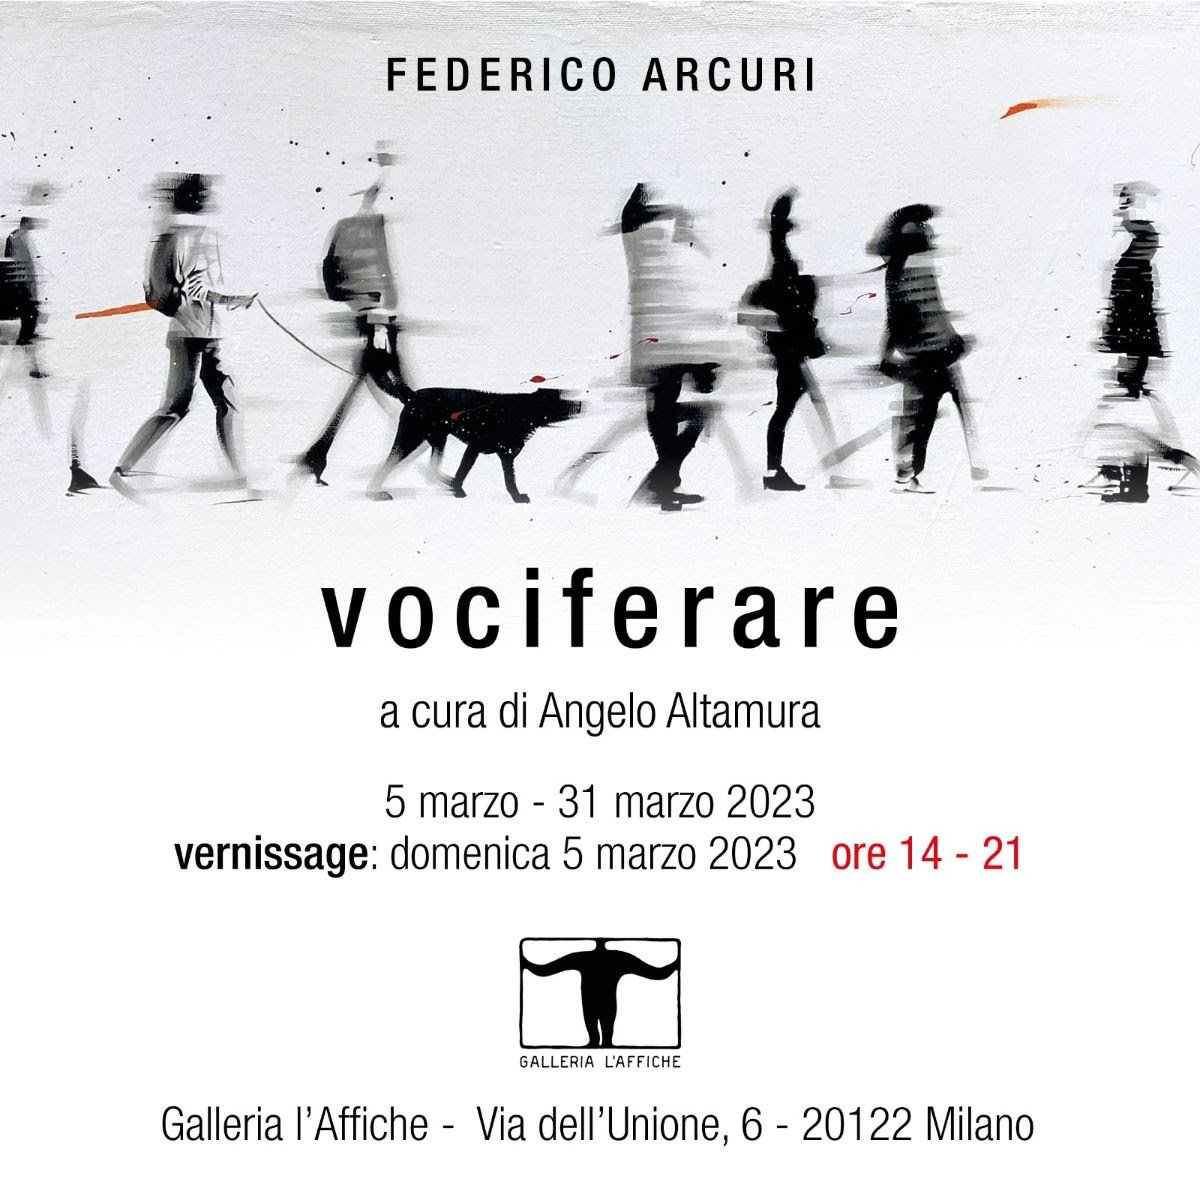 Federico Arcuri - Vociferare